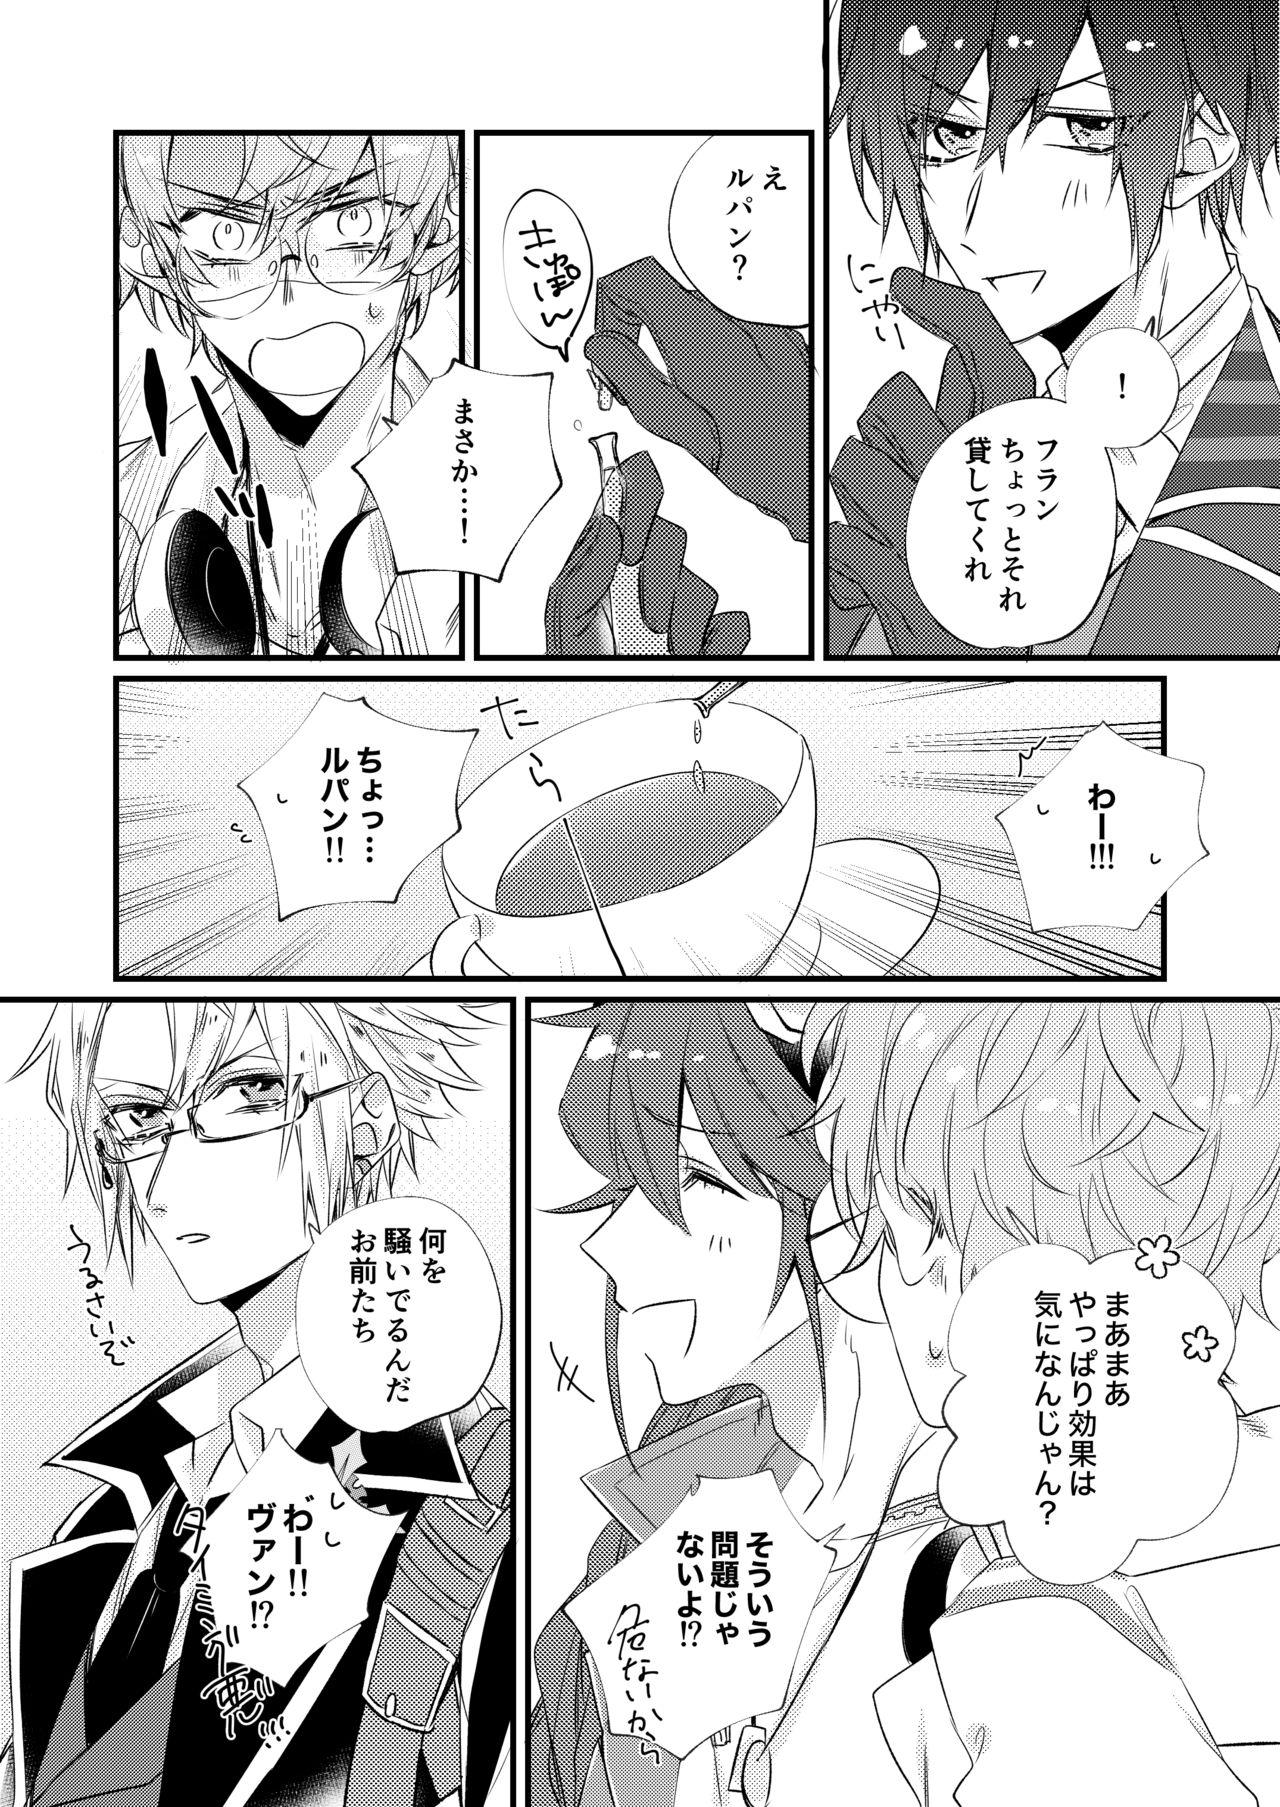 No Condom 熱におぼれる - Code realize sousei no himegimi Boyfriend - Page 5